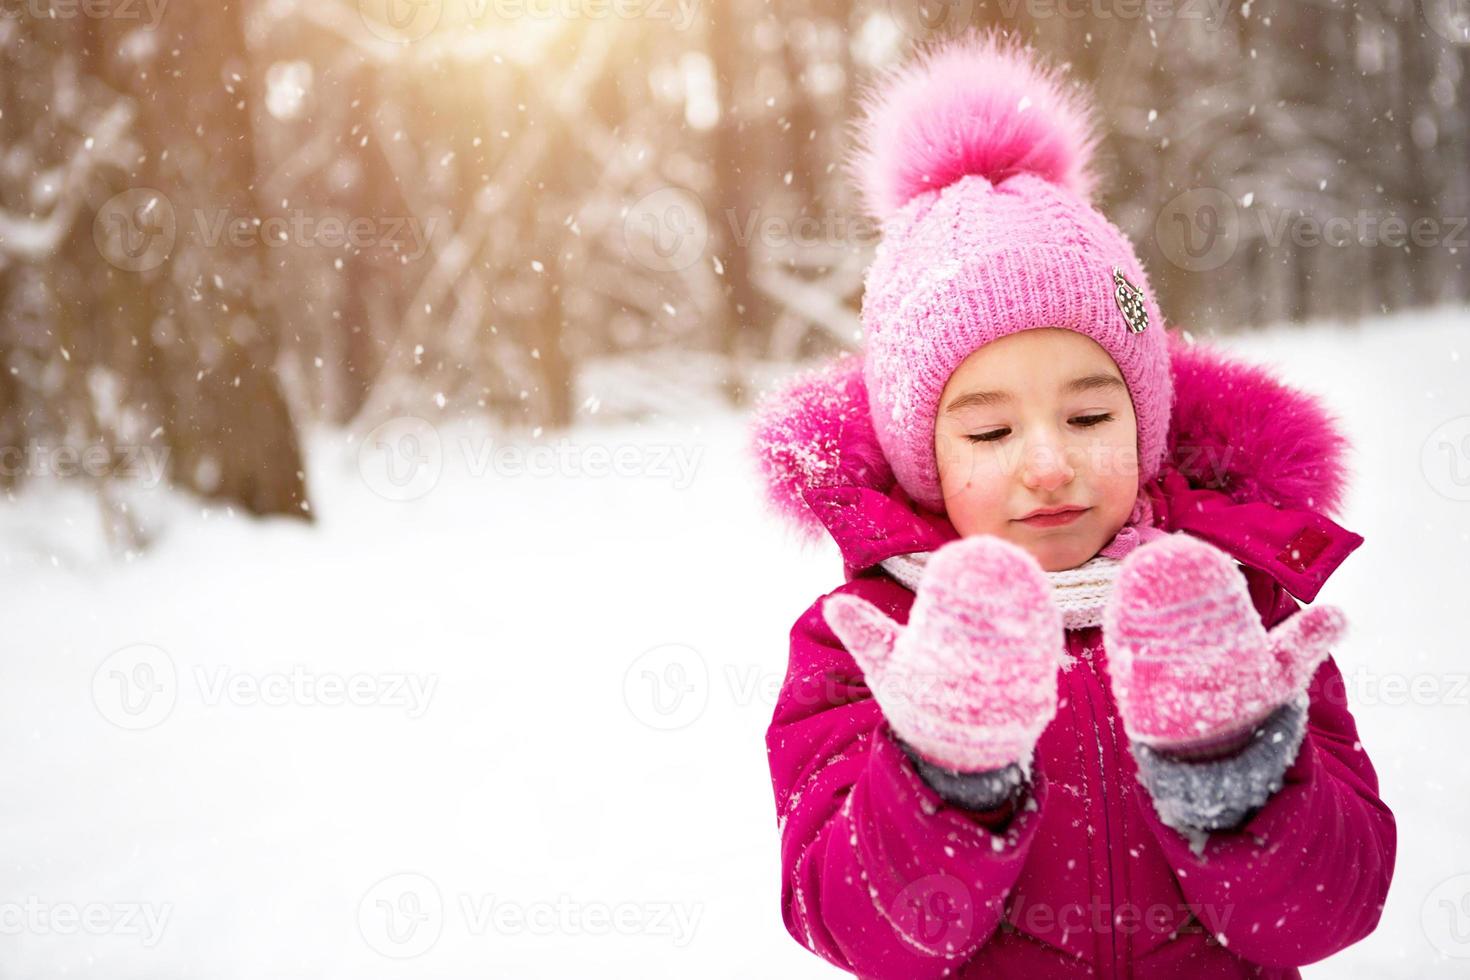 niña en el frío mira los mitones de nieve y sonríe. invierno, pasear al  bebé al